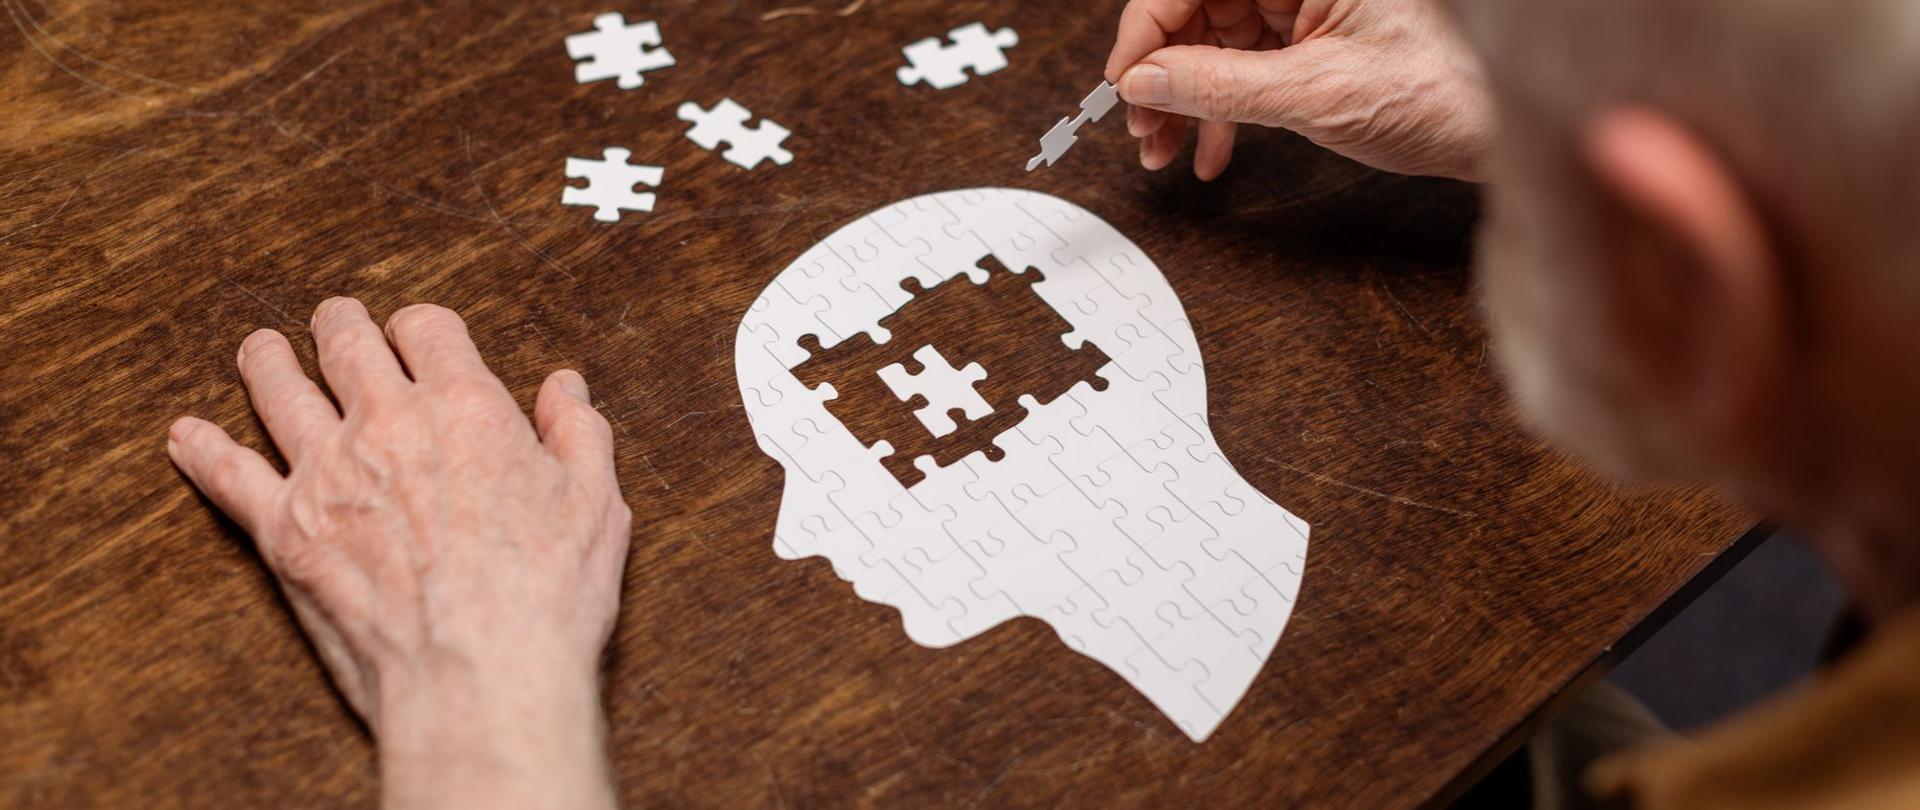 Na zdjęciu jest starszy mężczyzna układający puzzle w kształcie głowy człowieka.